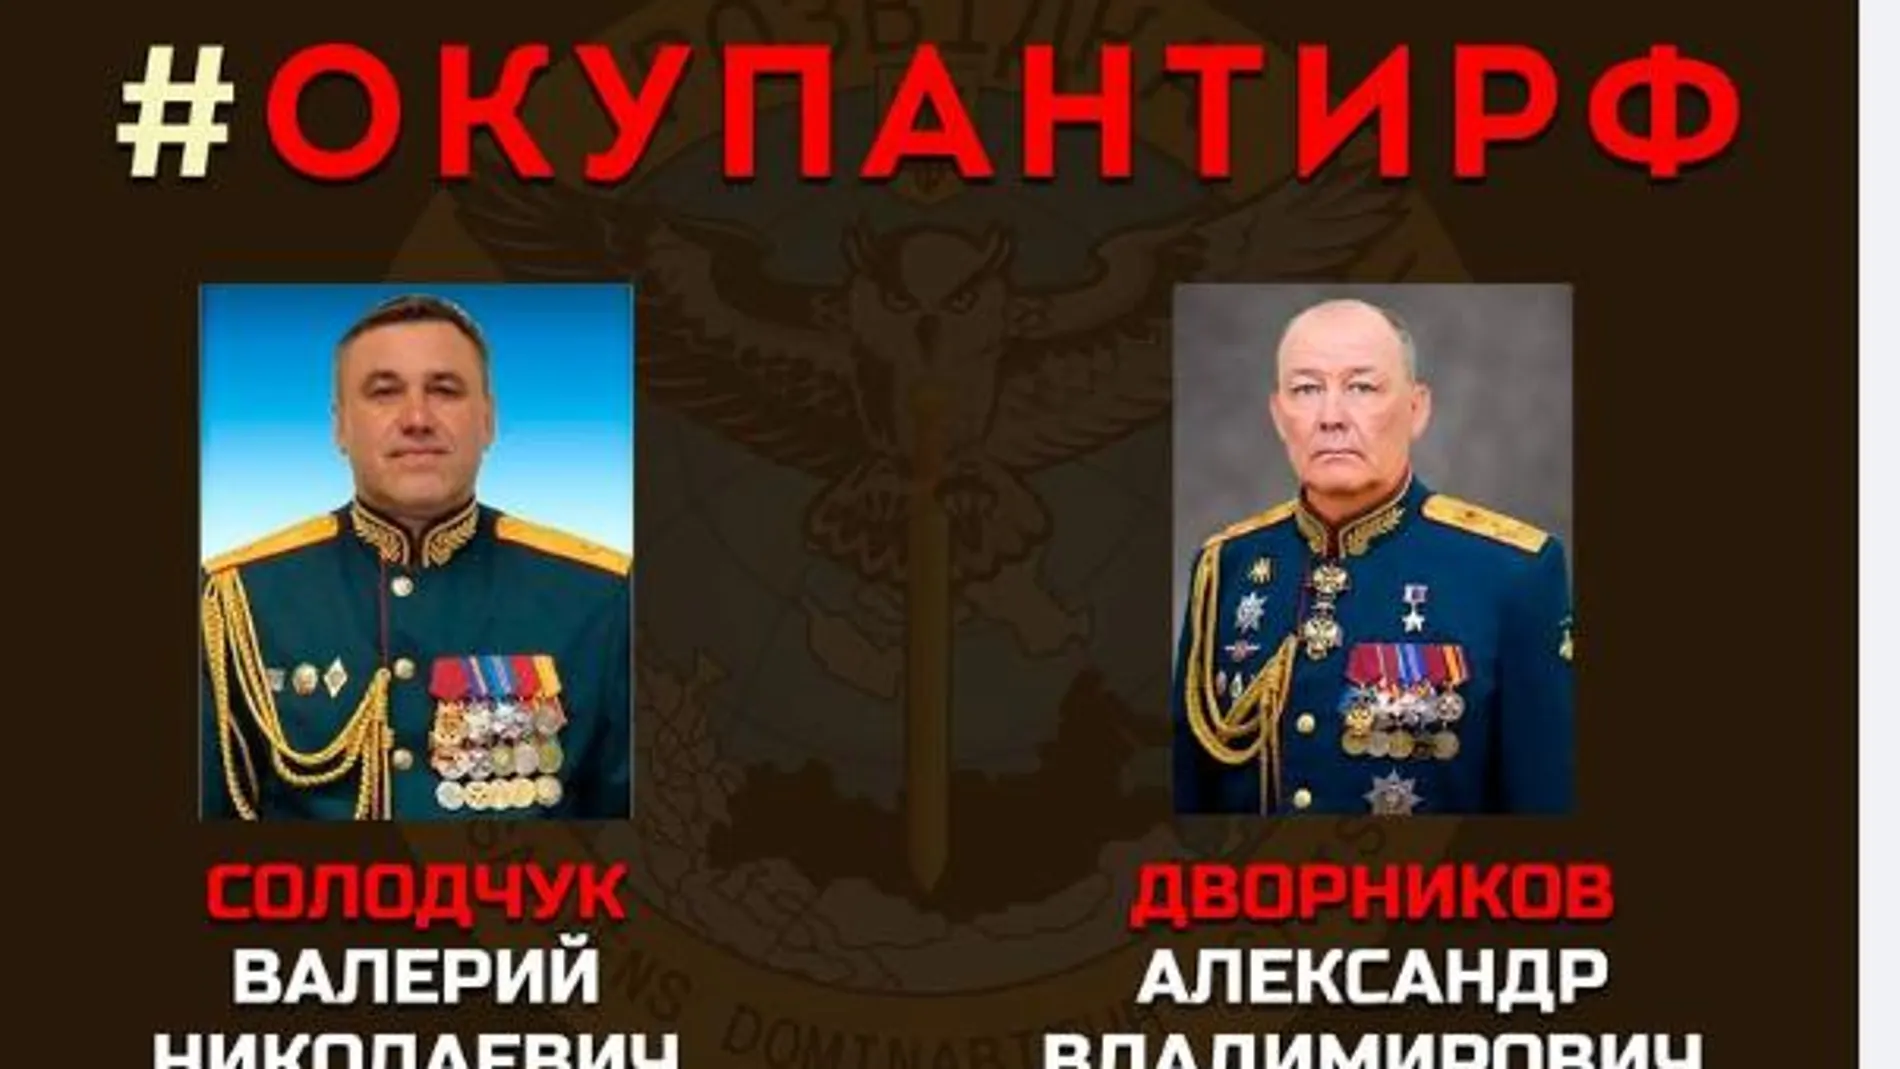 Fotografias de los dos militares rusos a los que Ucrania acusa de crímenes de guerra